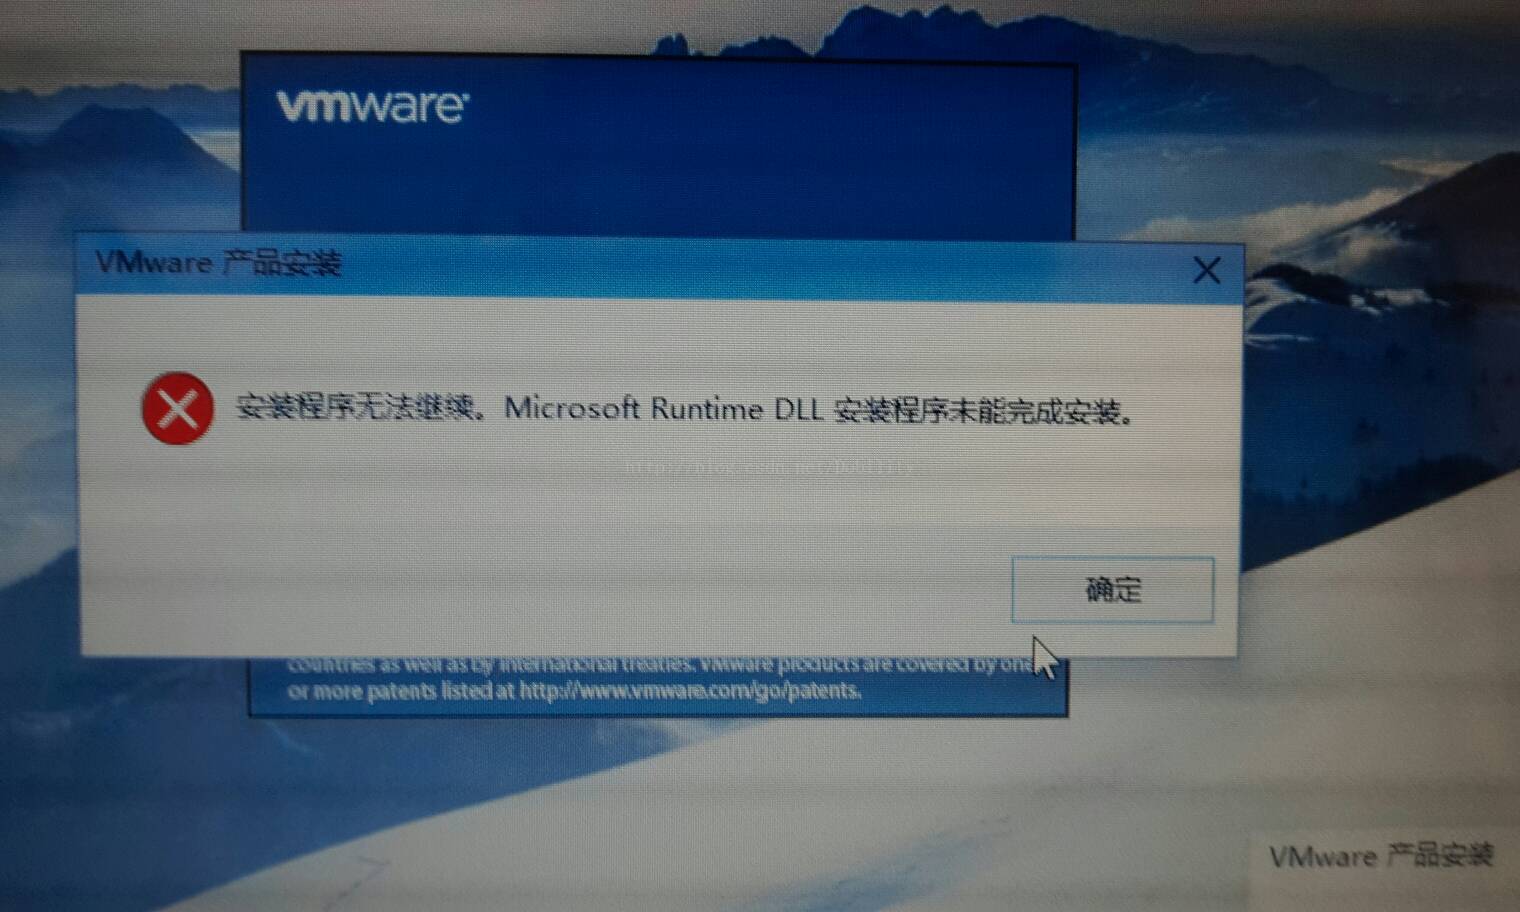 安装程序无法继续。Microsoft Runtime DLL安装程序未能完成安装